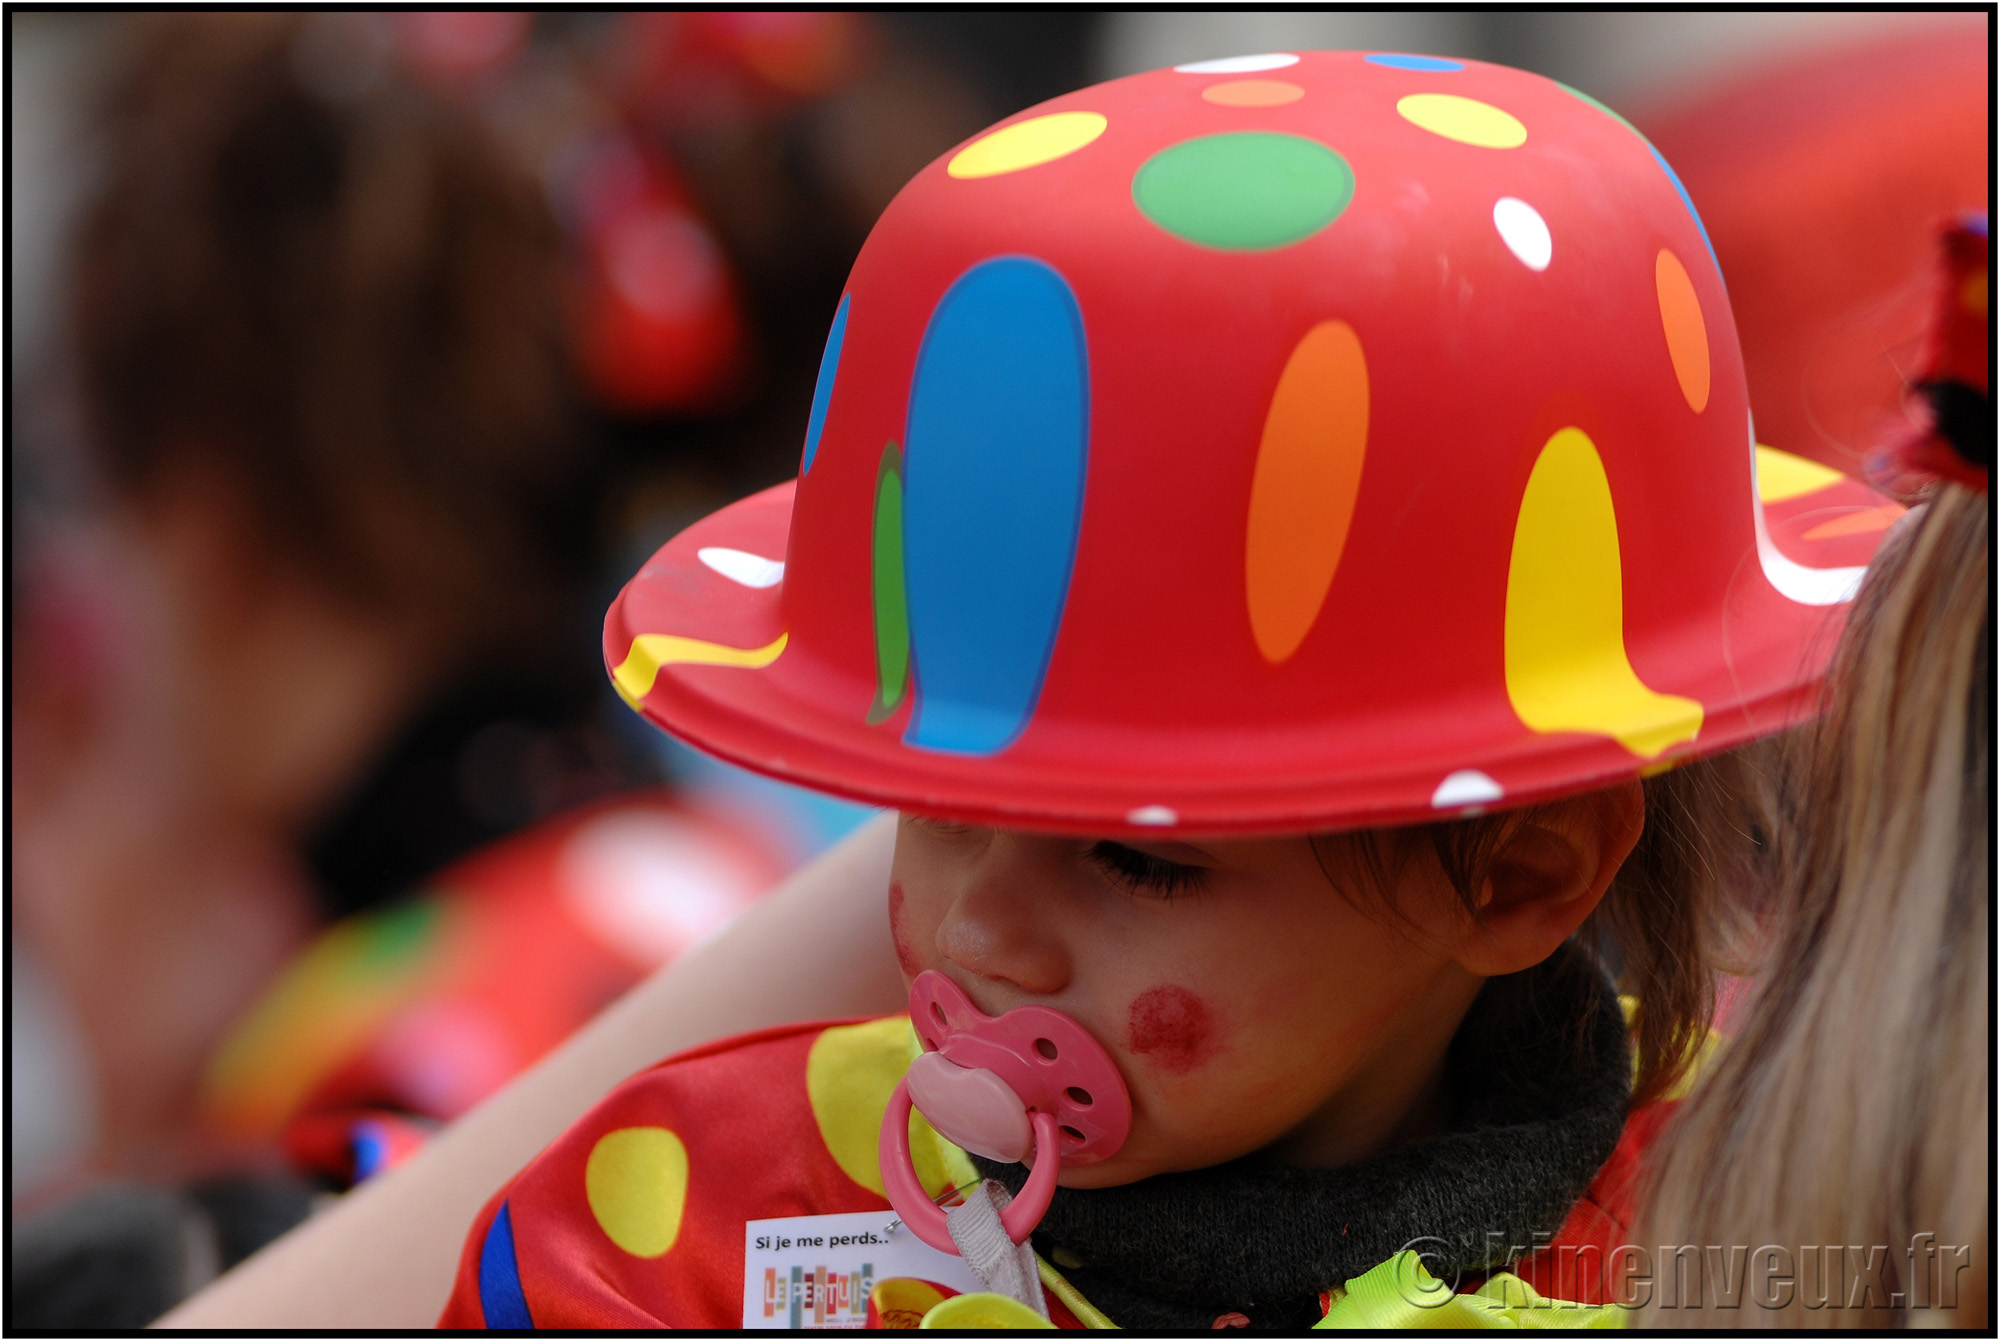 kinenveux_79_carnaval2015lr.jpg - Carnaval des Enfants 2015 - La Rochelle